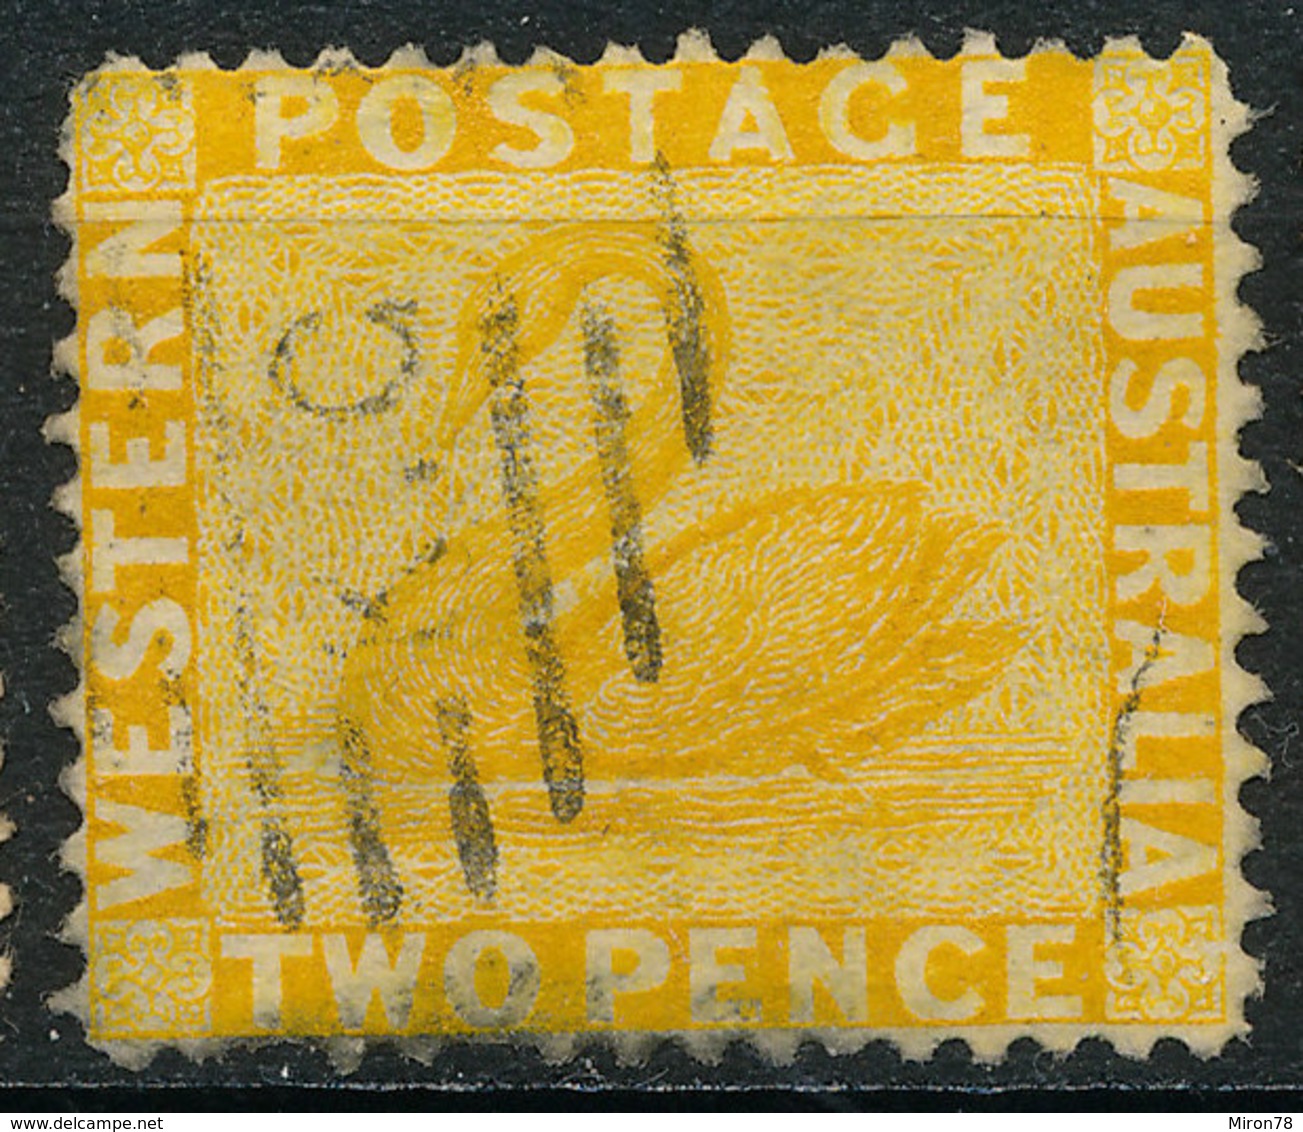 Stamp Australia 2p Used Lot61 - Used Stamps